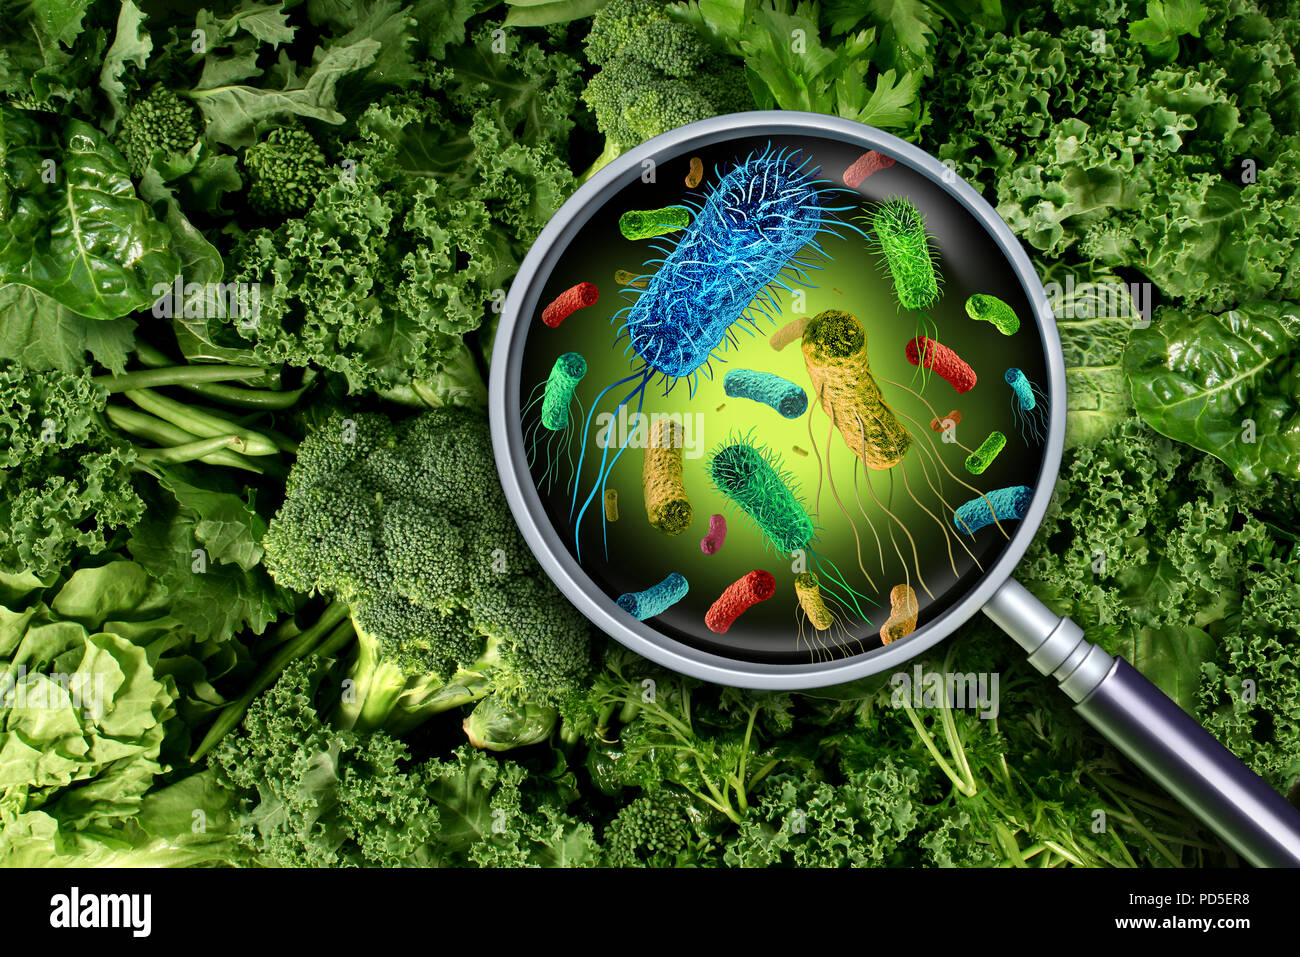 Bakterien und Keime auf Gemüse und die Gefahr für die Gesundheit des auslösenden Nahrungsmittels grün Essen einschließlich römersalat als Sicherheitskonzept produzieren verunreinigt. Stockfoto